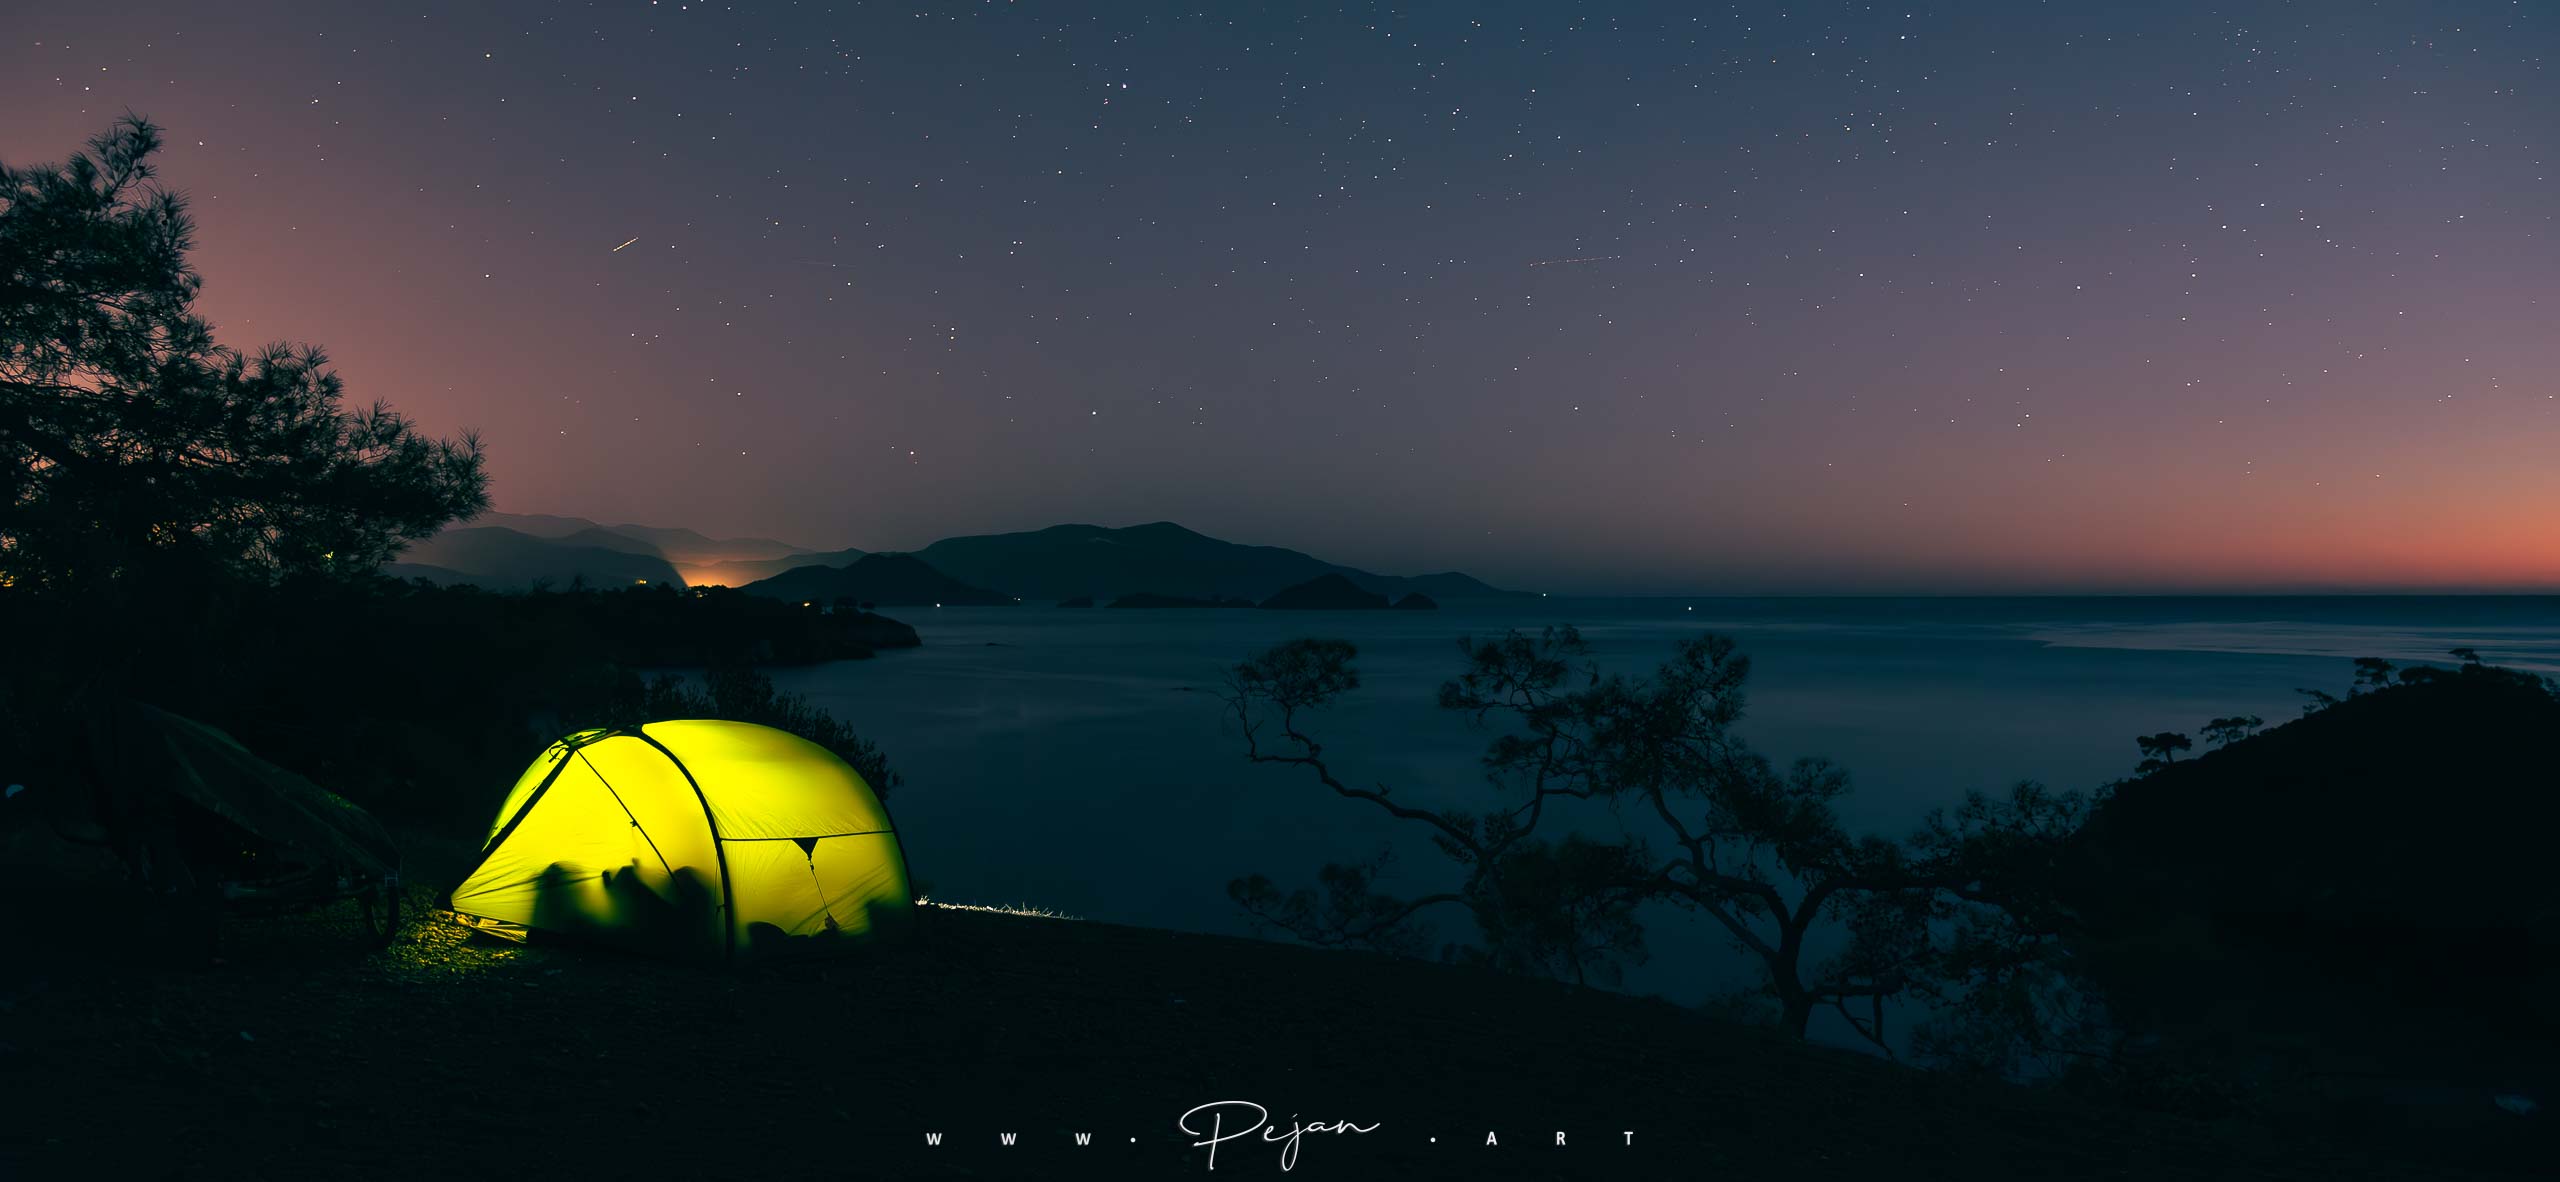 Tente Exped Venus II illuminée de nuit sur une falaise surplombant la mer Égée, bivouac sous un ciel constellé d'étoiles près de Fethiye, Turquie